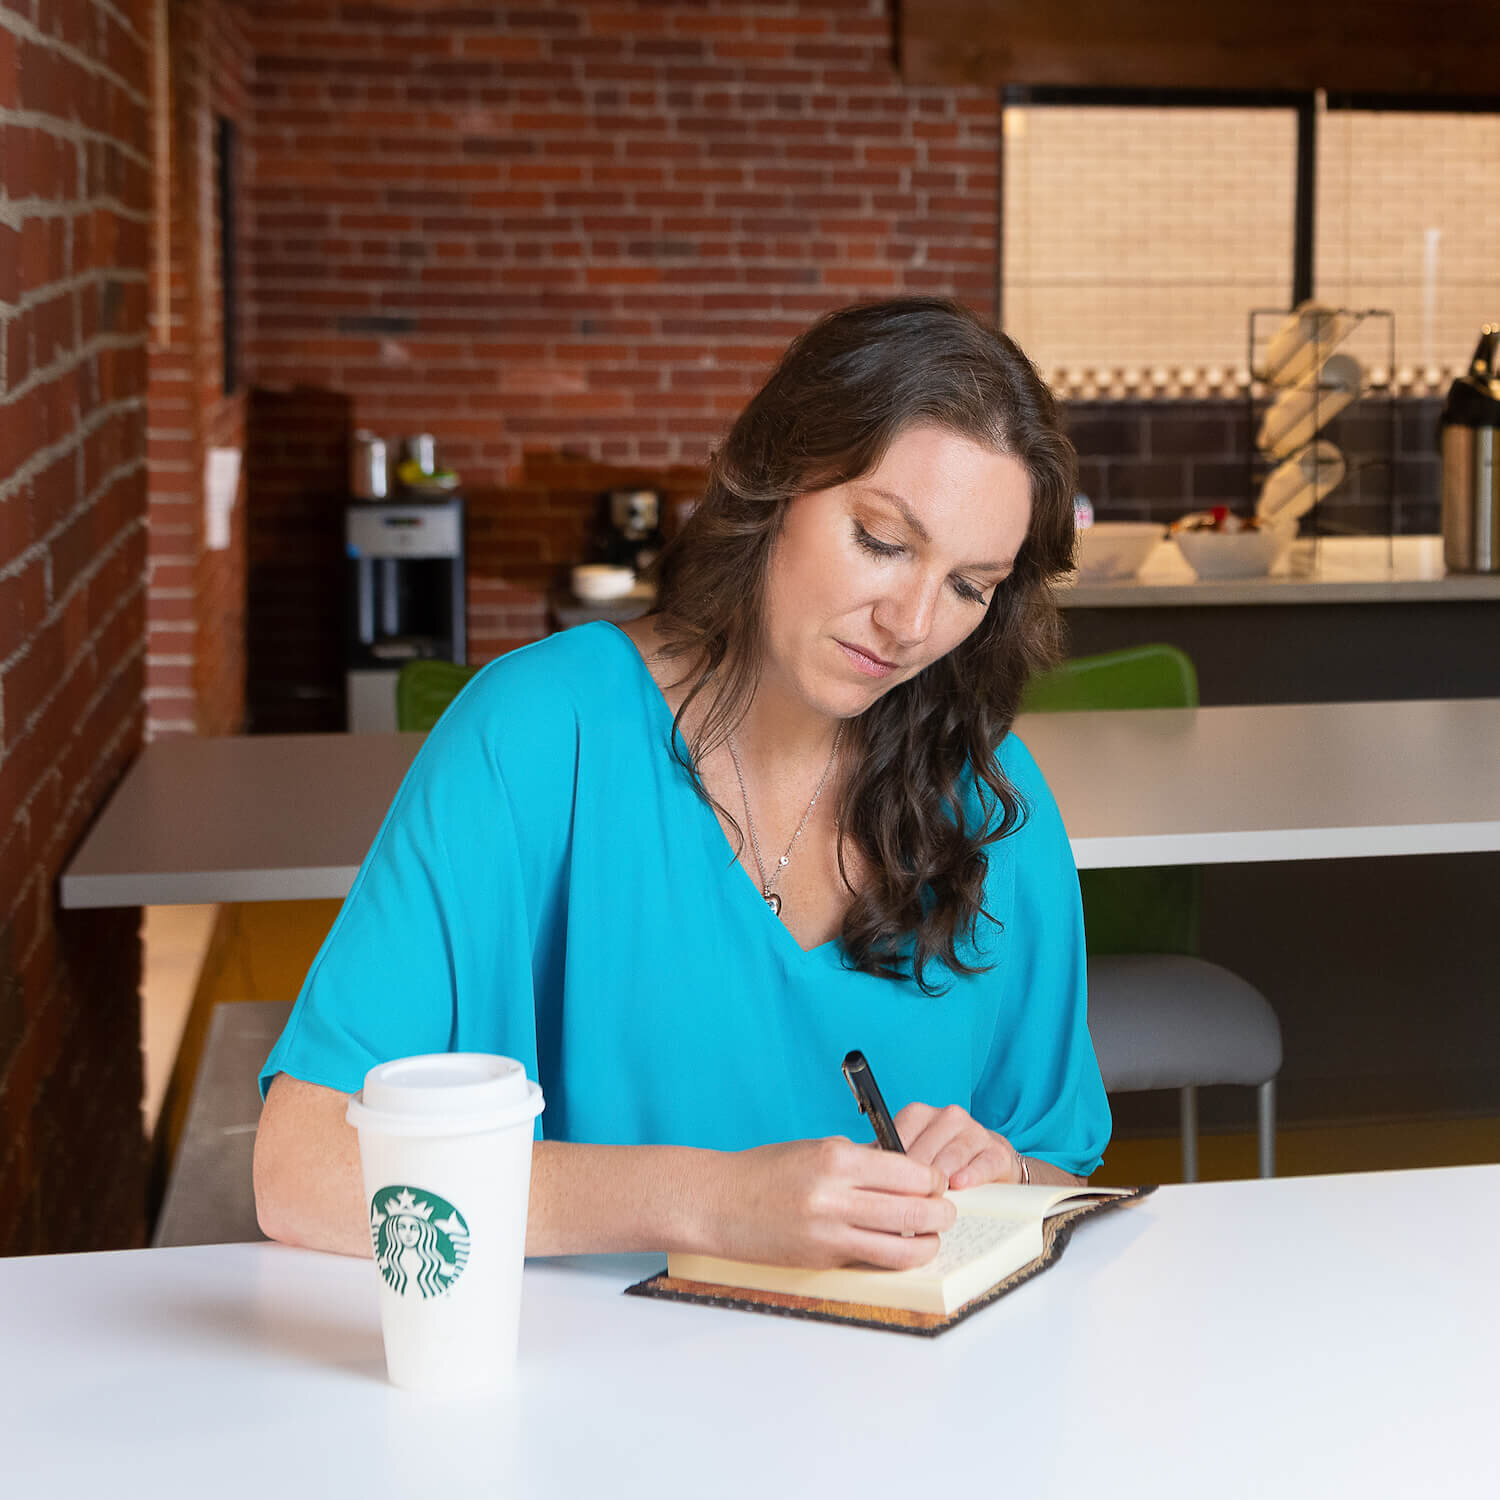 holistic health coach - Elizabeth sitting in coffee shop writing in notebook.jpg